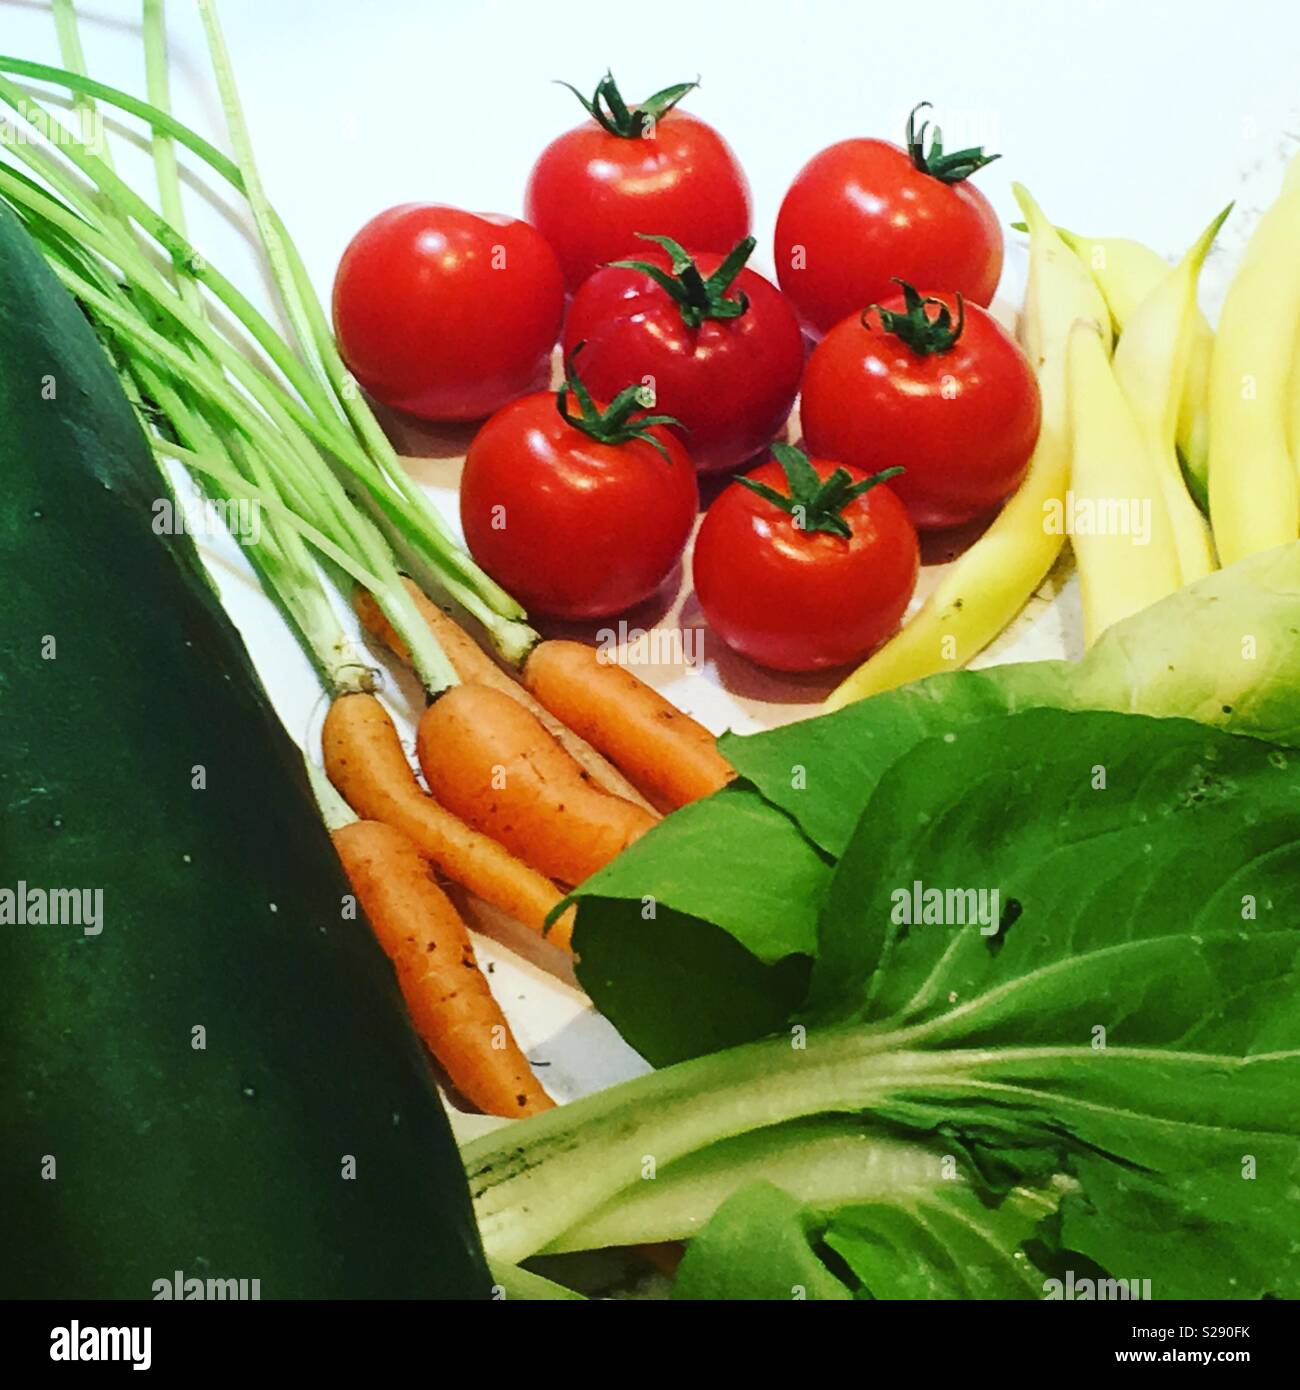 Fresh veggies from the garden Stock Photo